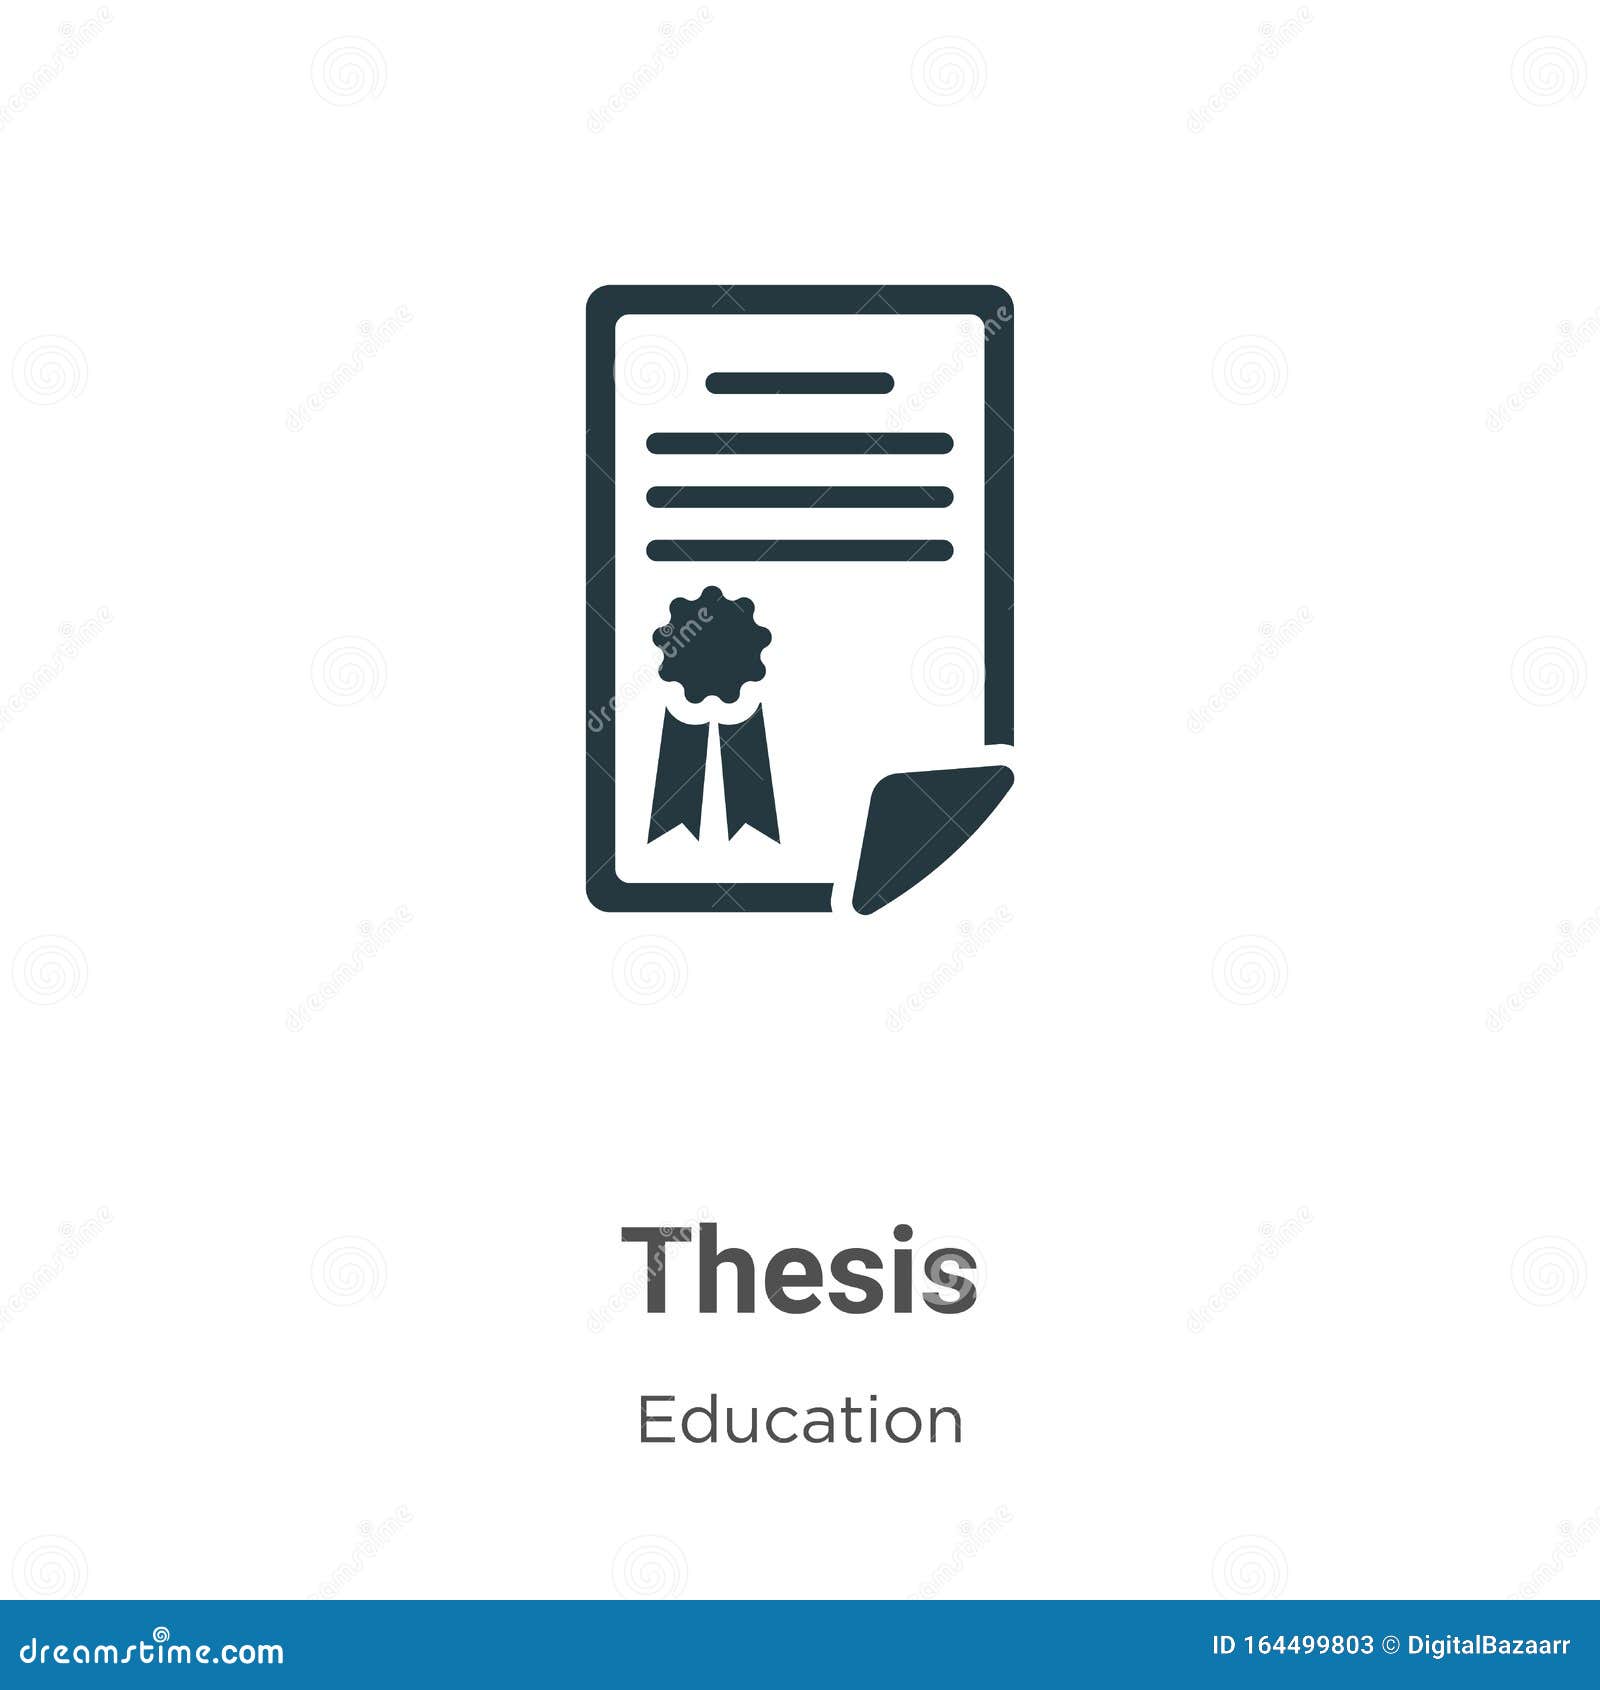 thesis icon design